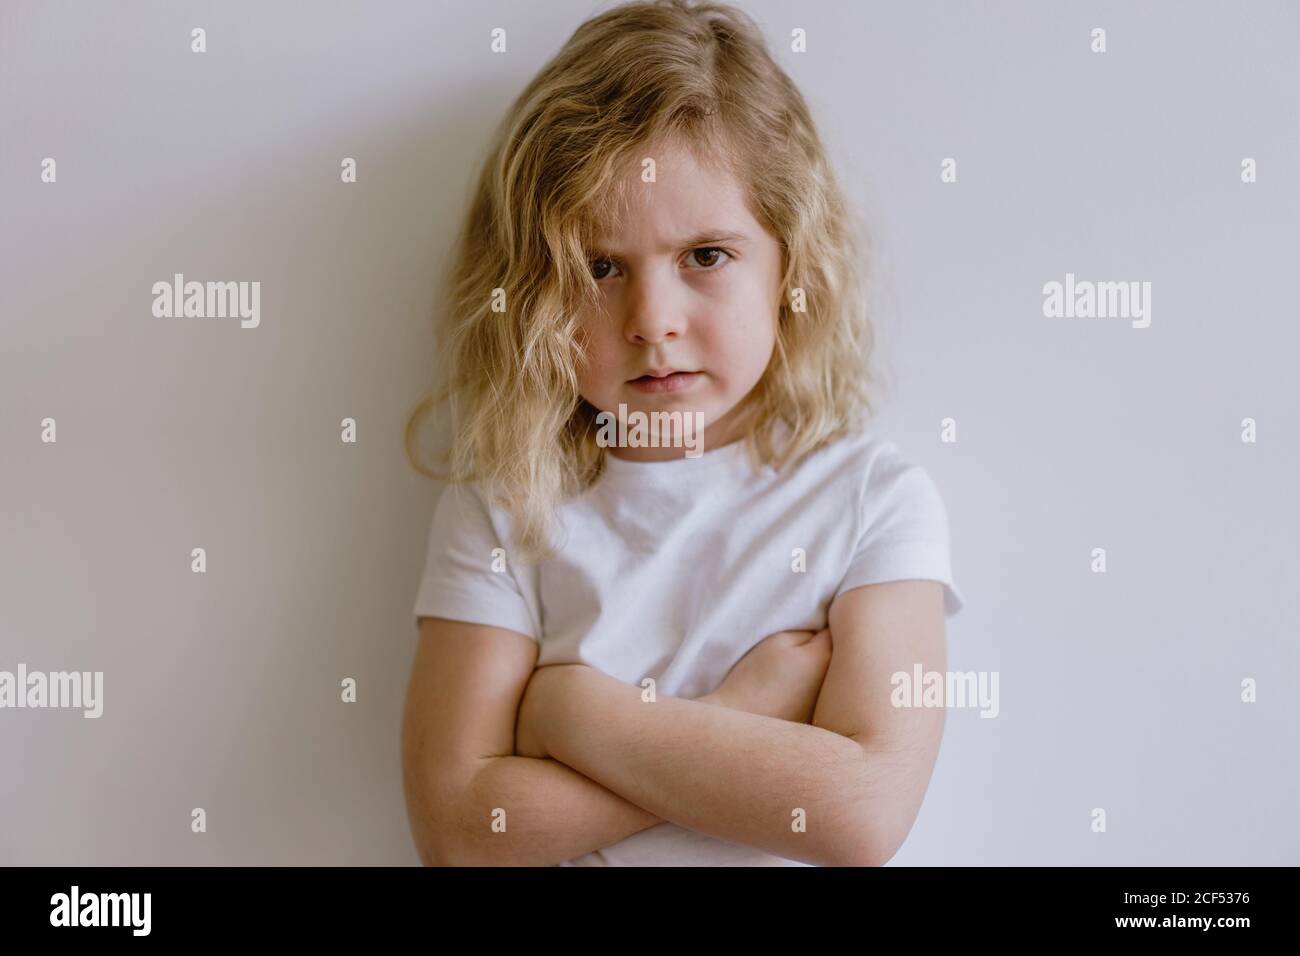 Deluso bambino piccolo in t-shirt casual guardando la macchina fotografica su sfondo bianco in studio Foto Stock